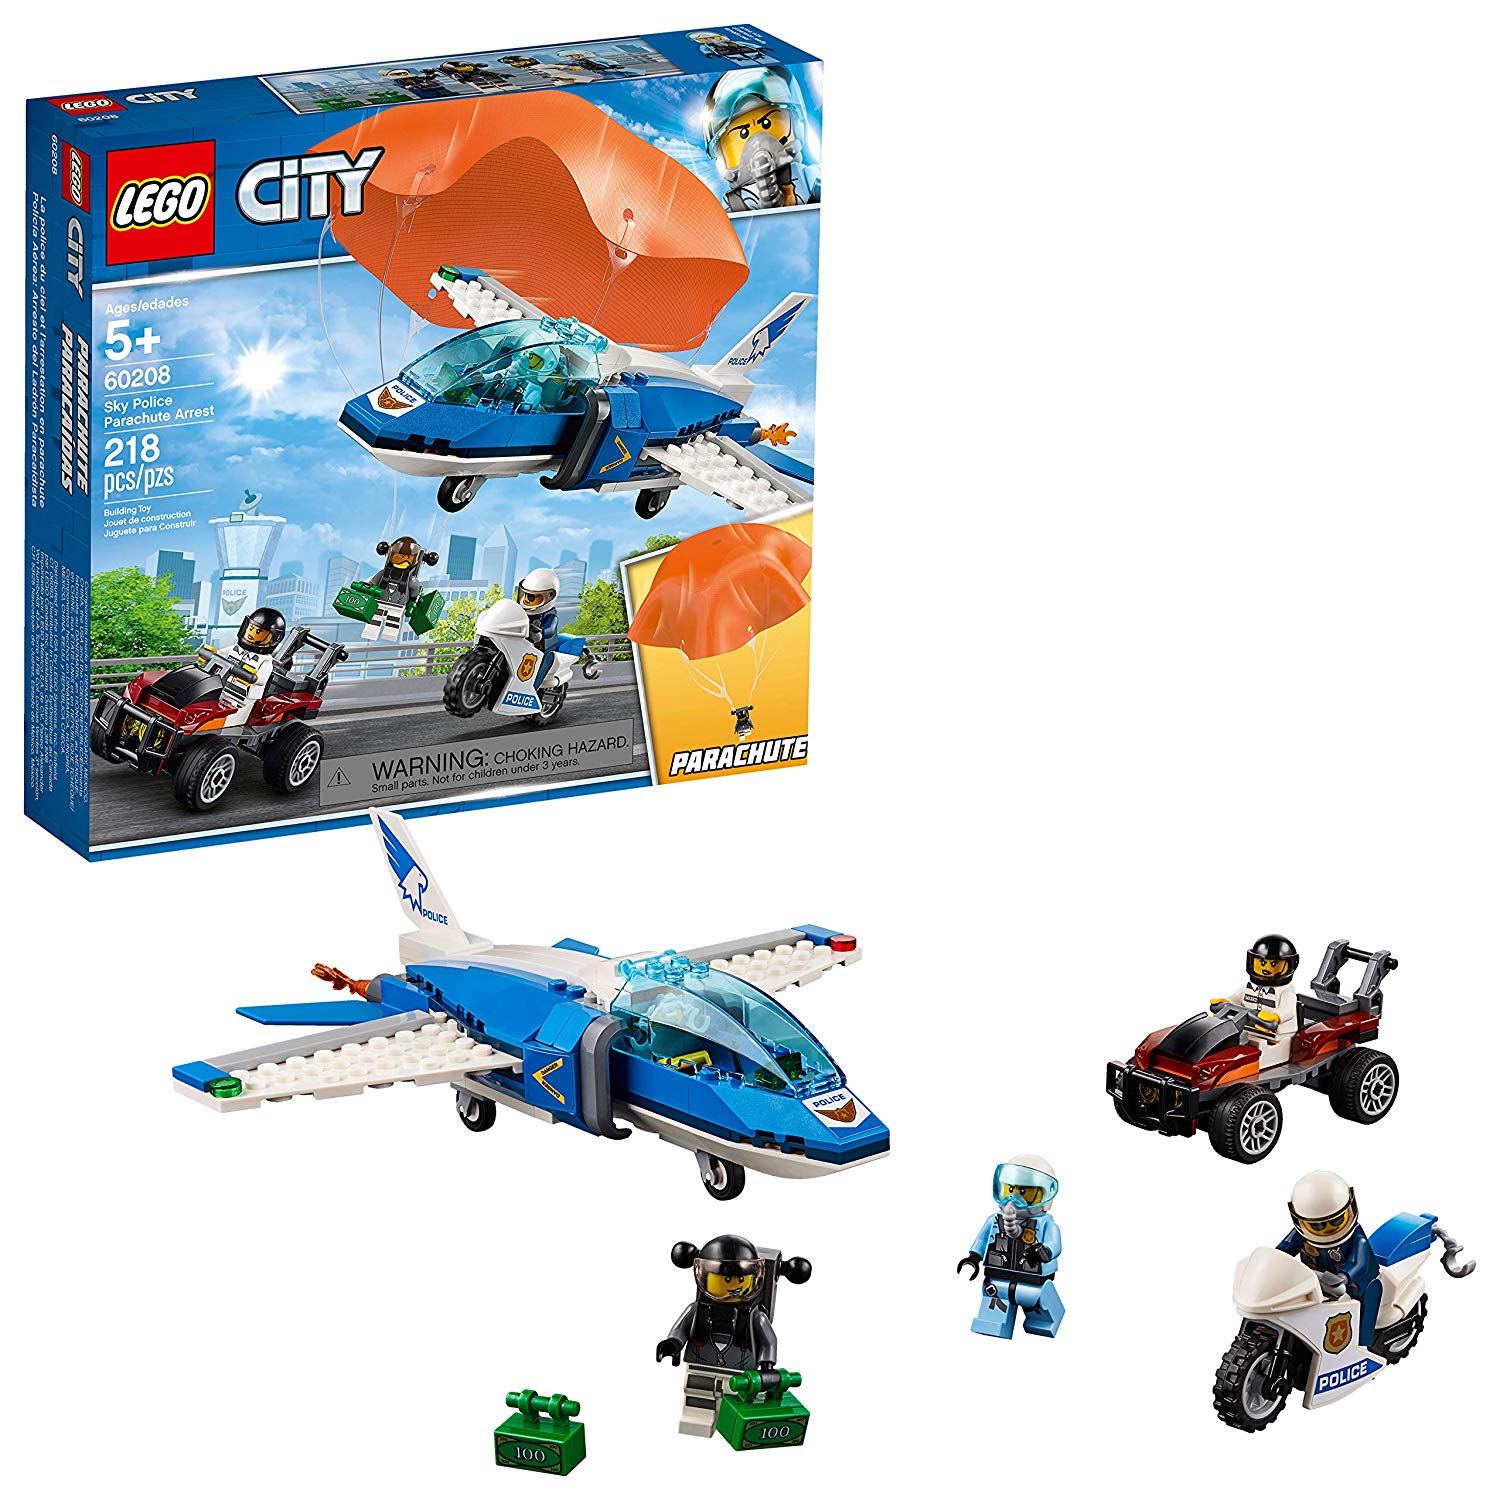 City Lego Sky Police Jet Parachute Arrest 60208 Construction Kit, New 2019 